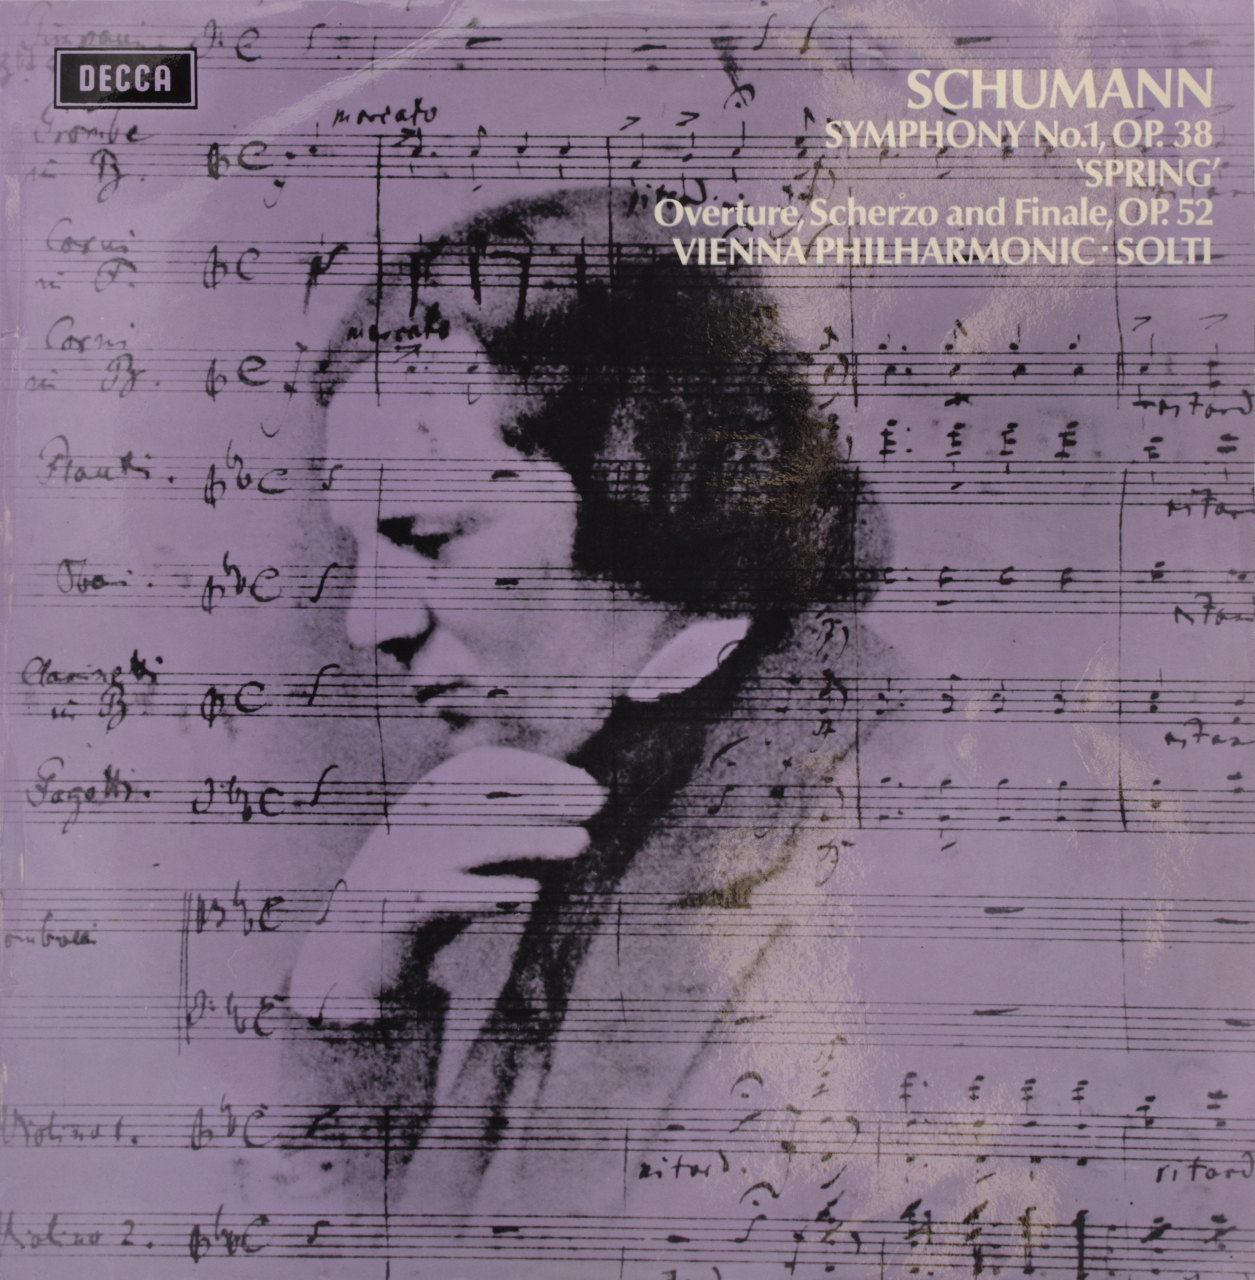 Schumann: Symphony Nº 1, Op. 38 Spring; Overture, Scherzo and Finale, Op. 52